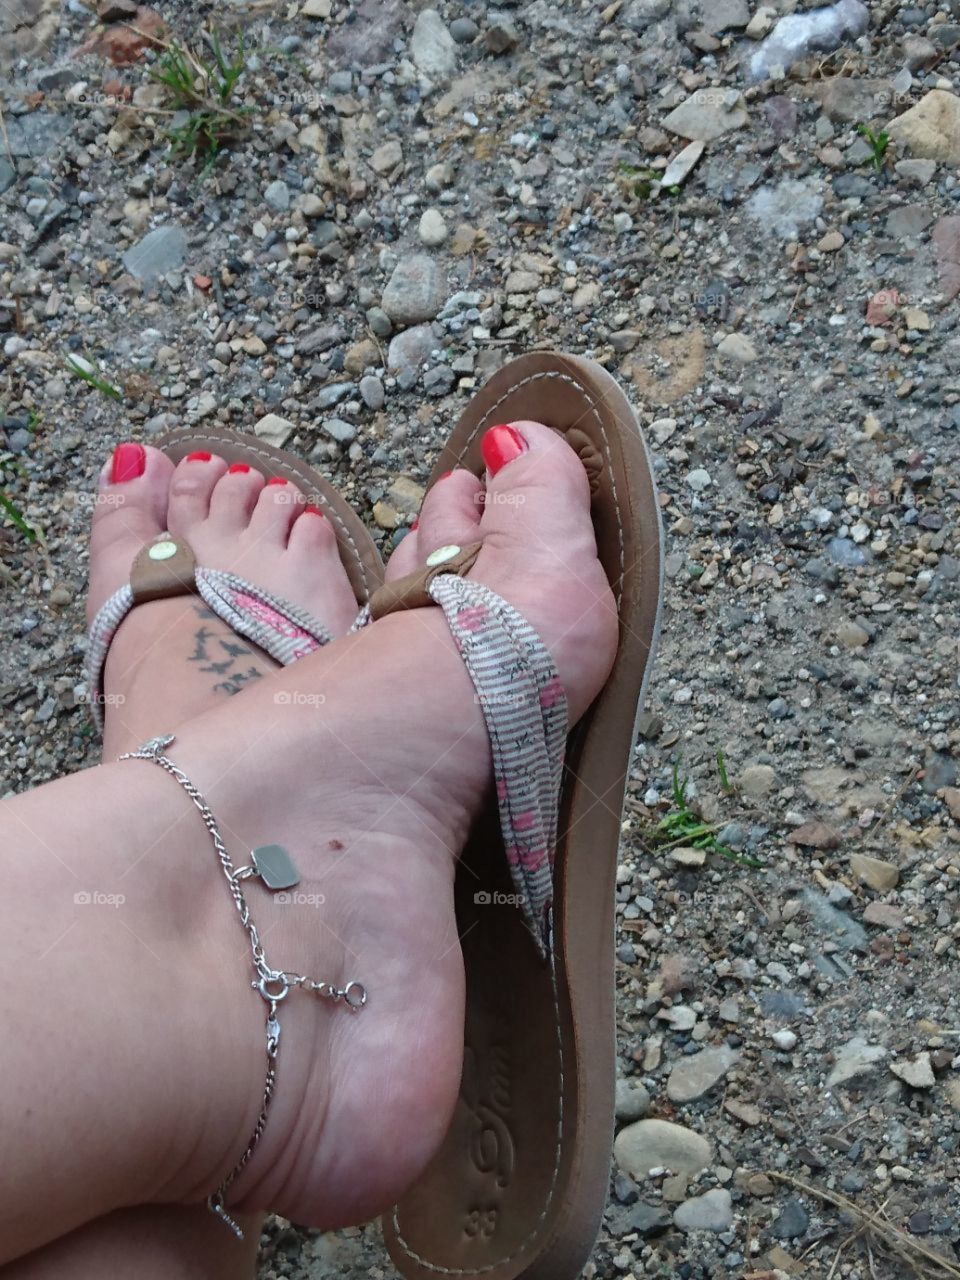 sexy feet in Flip flops